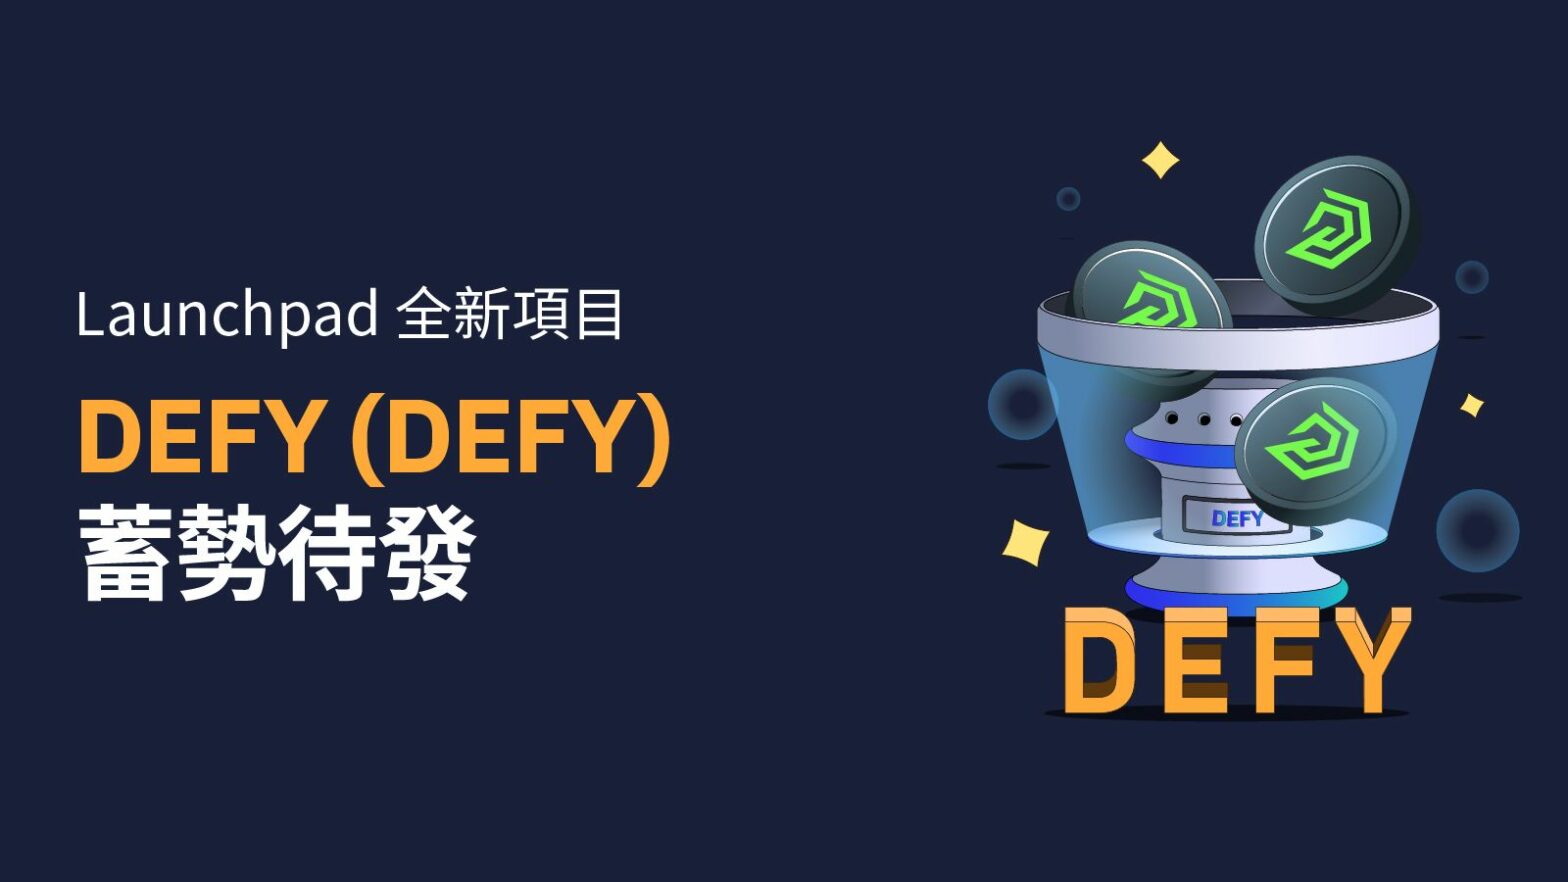 DEFY (DEFY) 現已登陸 Bybit Launchpad